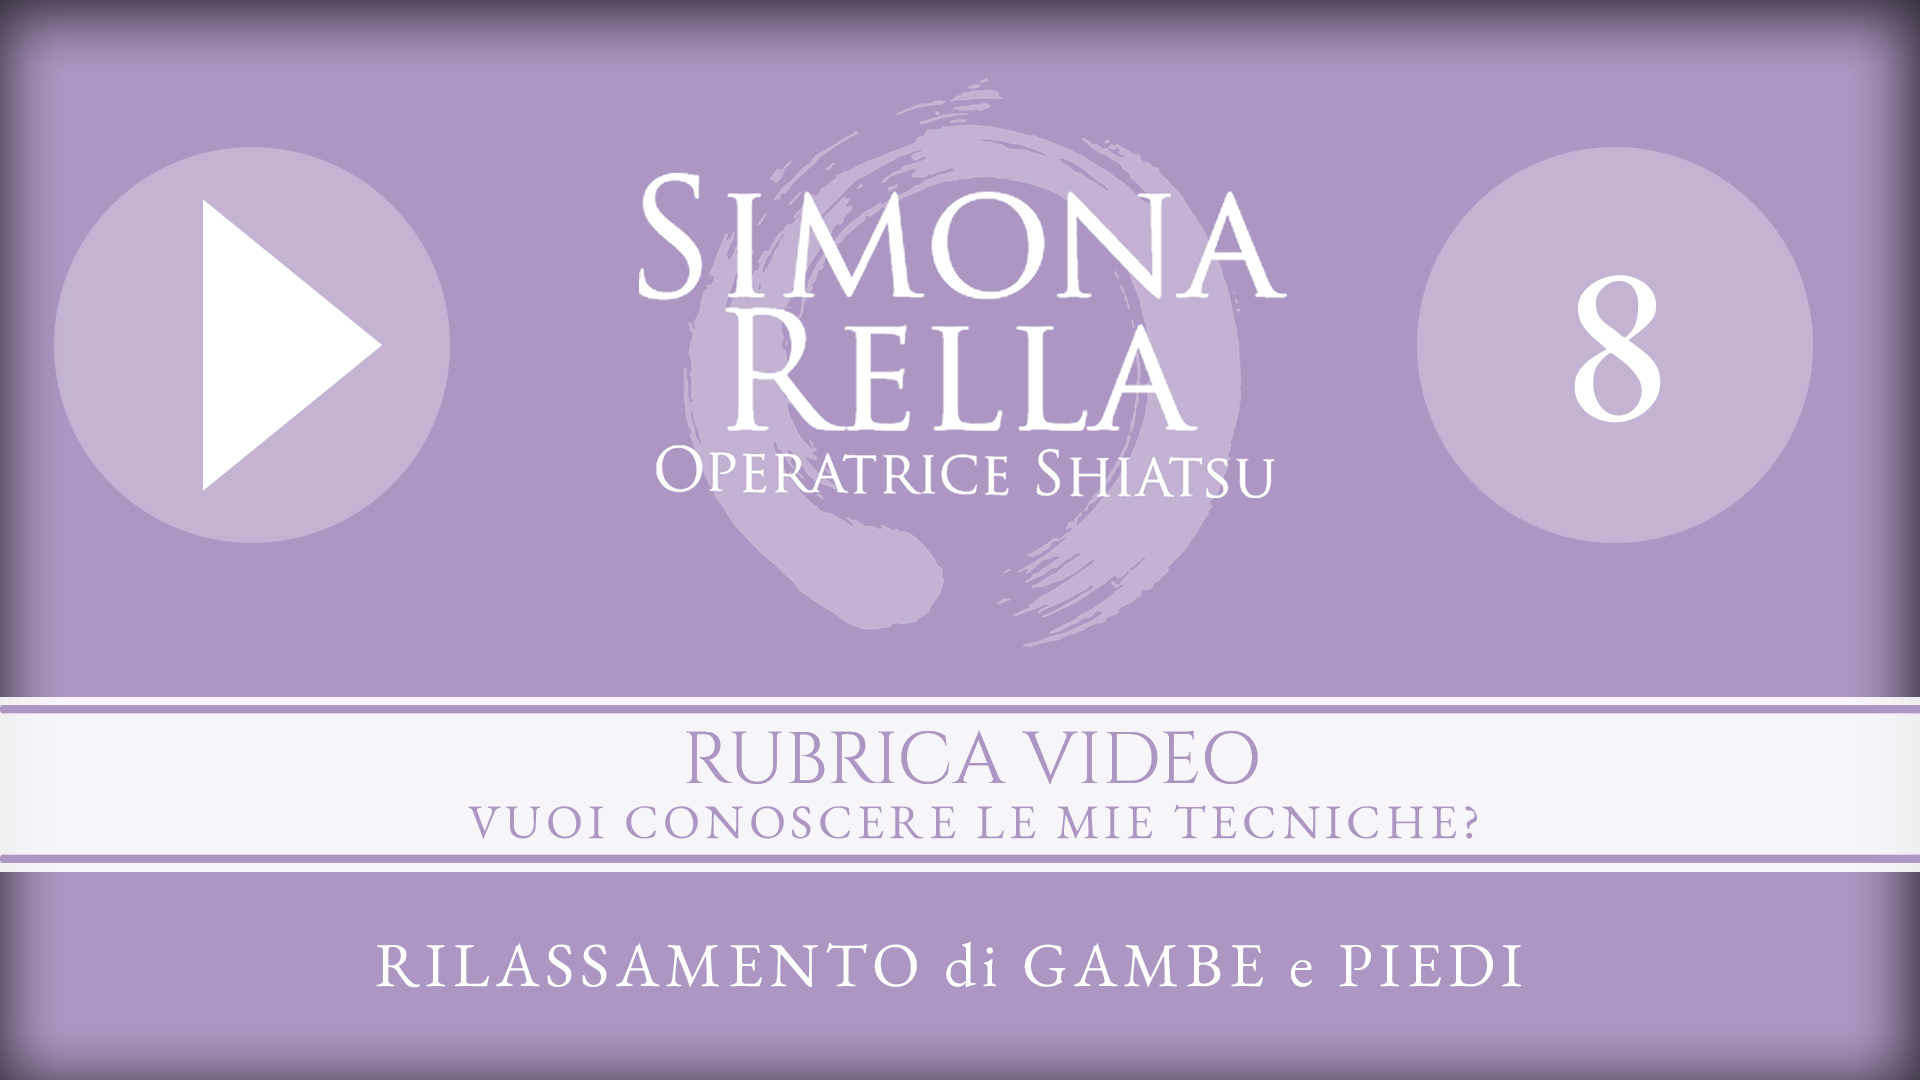 shiatsu__simona-rella__RUBRICA-VIDEO-8__RILASSAMENTO-di-GAMBE-e-PIEDI__